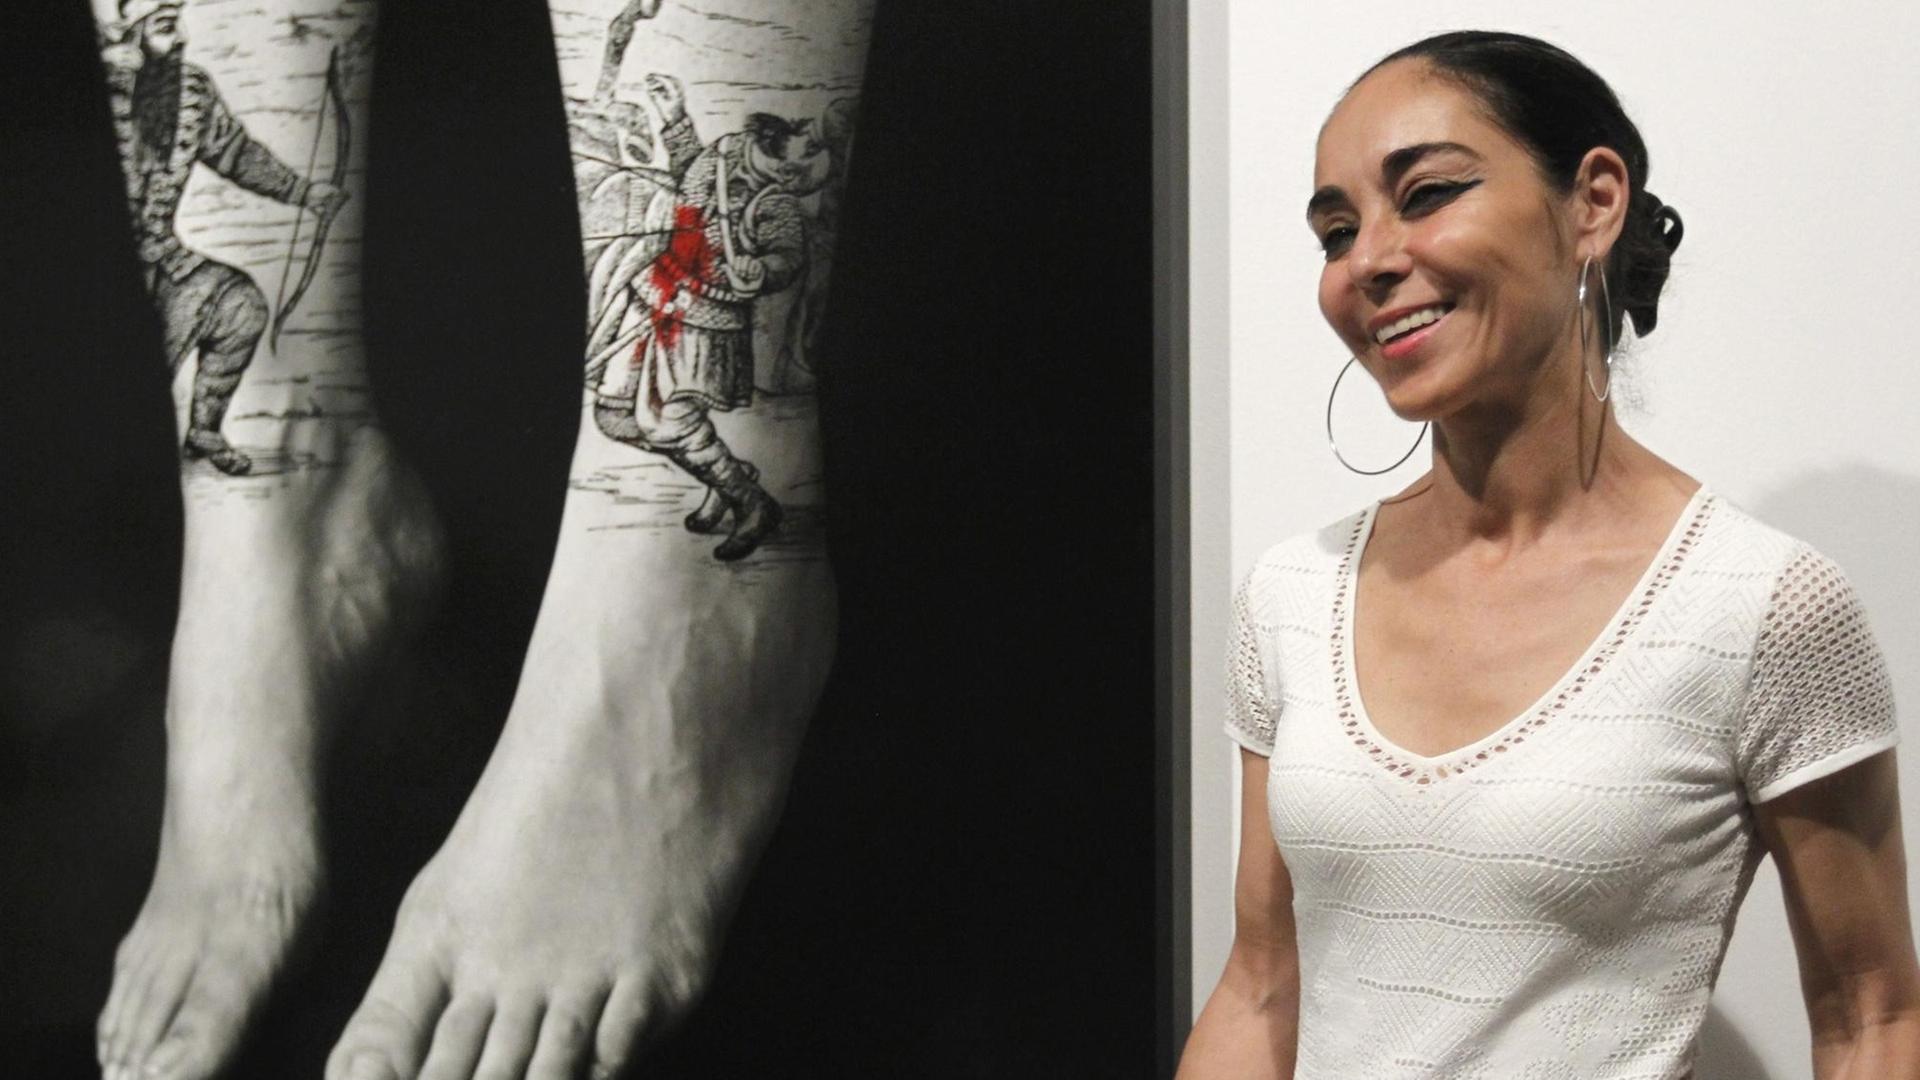 Shirin Neshat in ihrer Ausstellung "Written on the body" im Rahmen des PhotoEspana Festival in Madrid 2013.